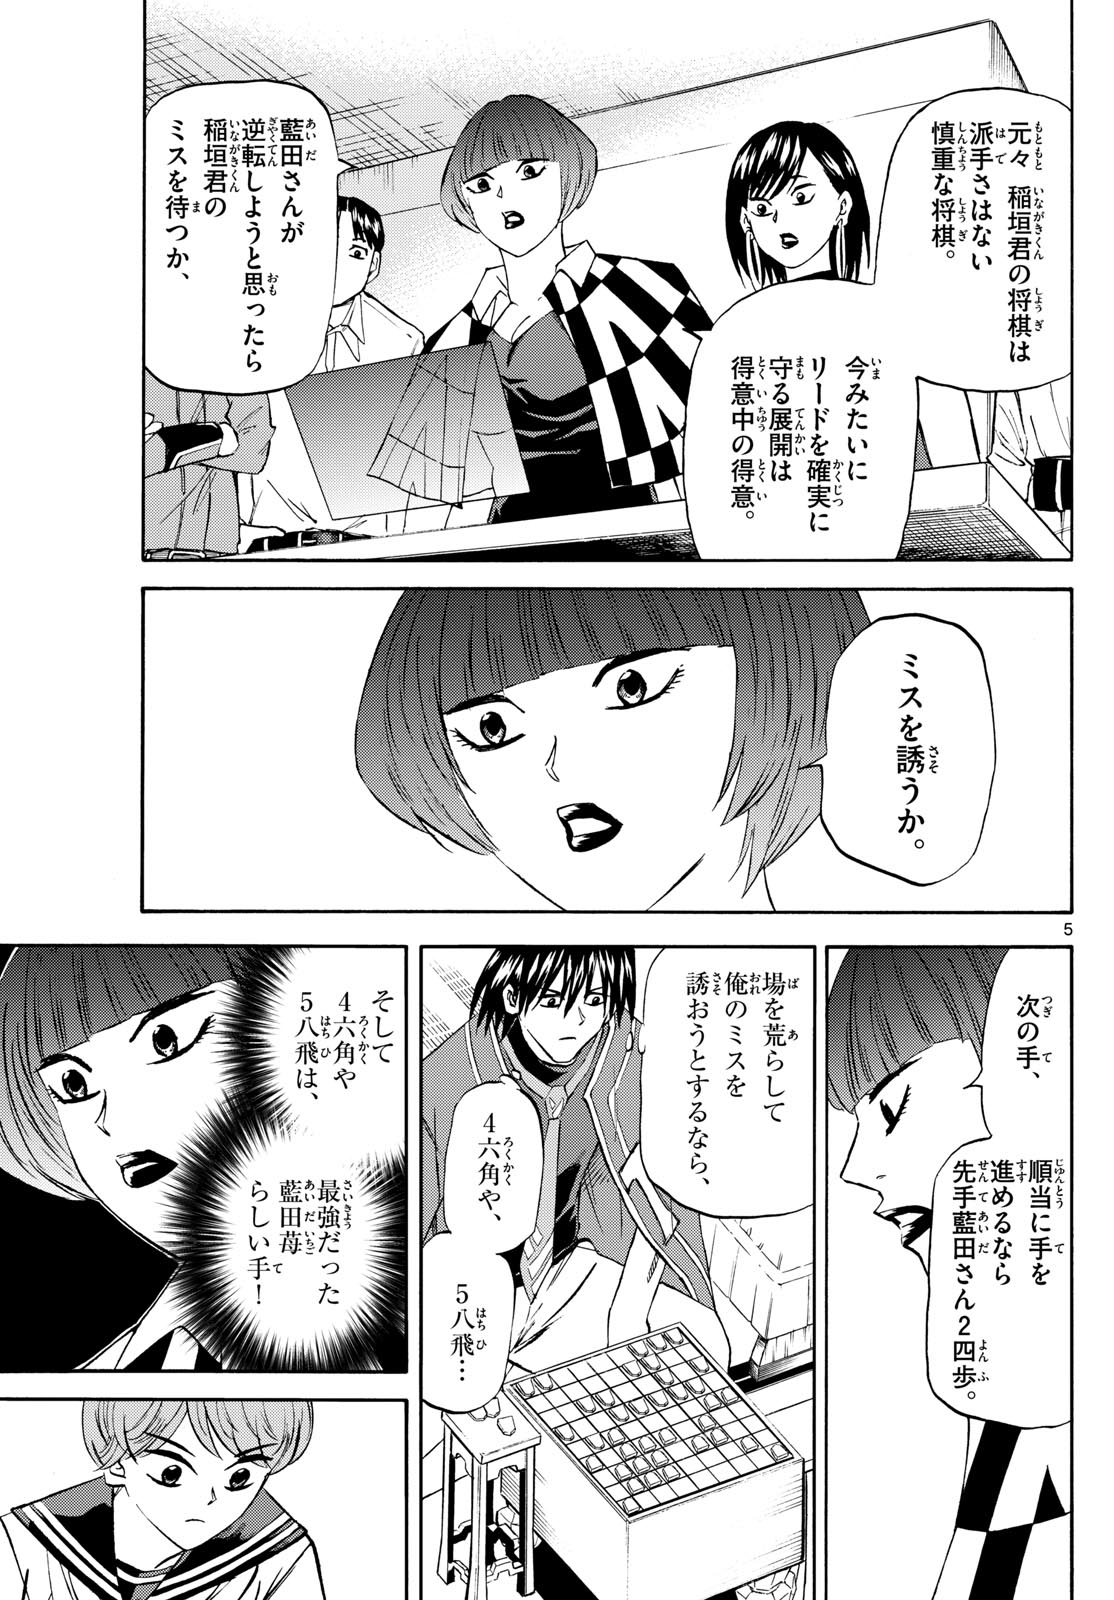 Tatsu to Ichigo - Chapter 198 - Page 5